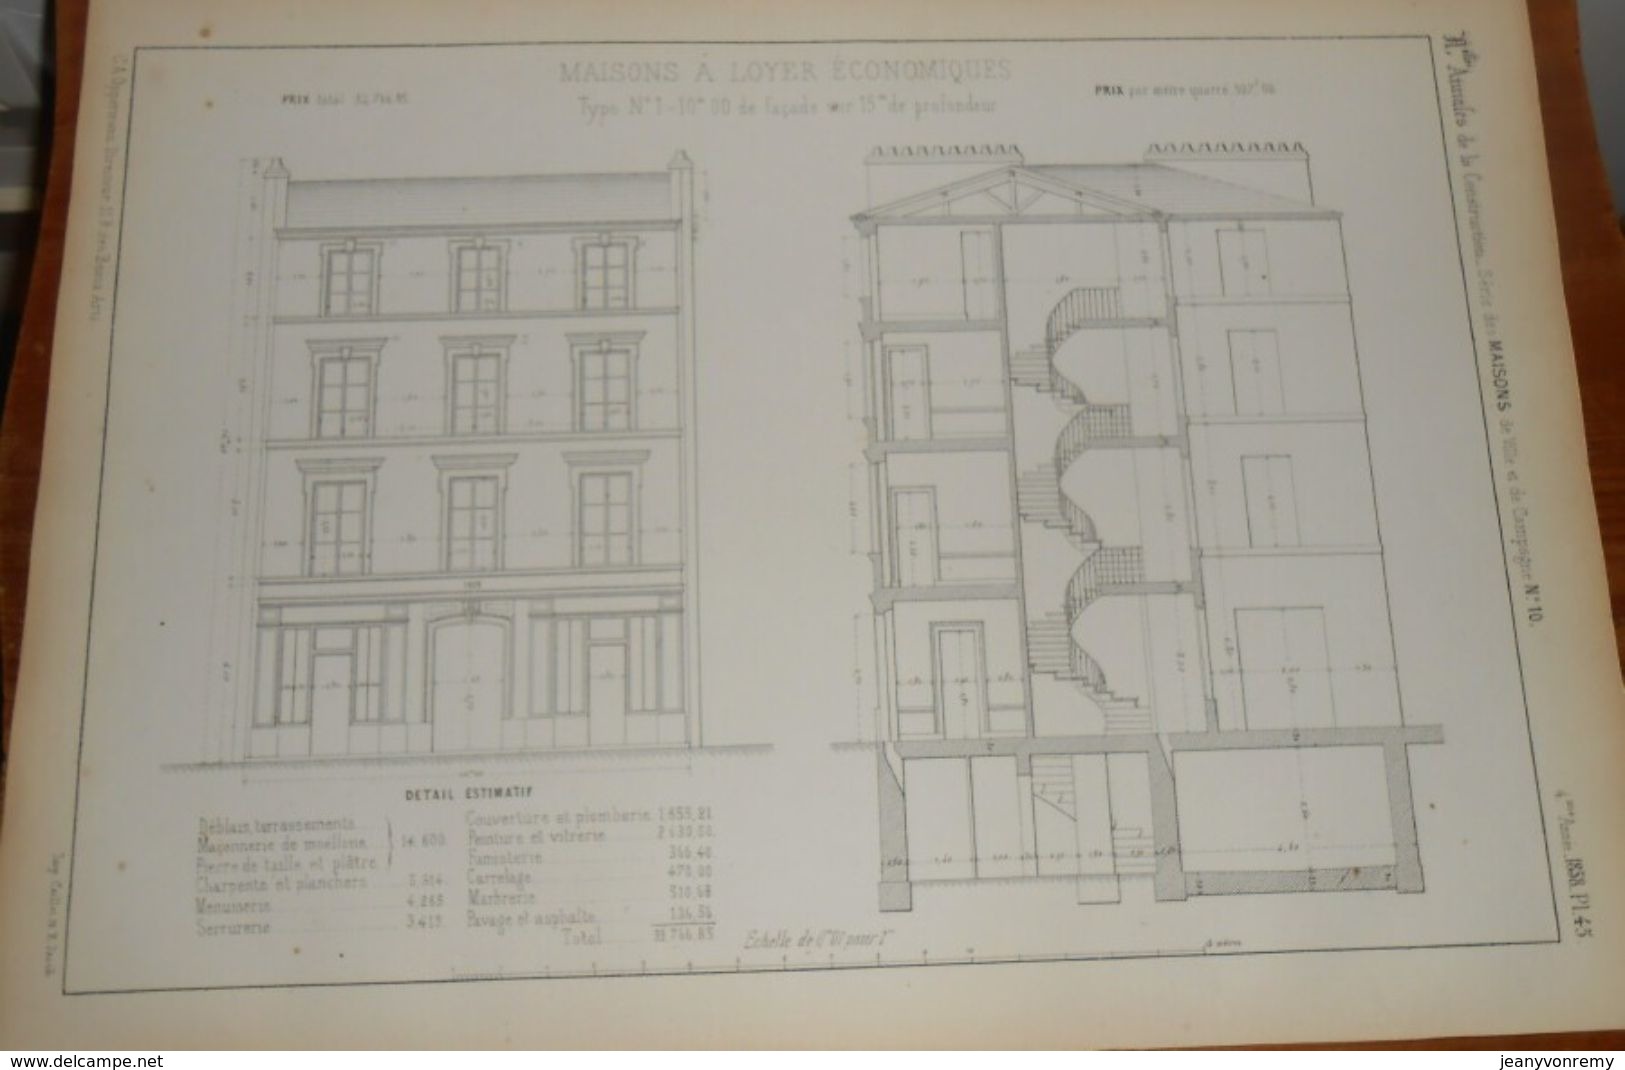 Plan De Maison à Loyer économique. 1858 - Obras Públicas